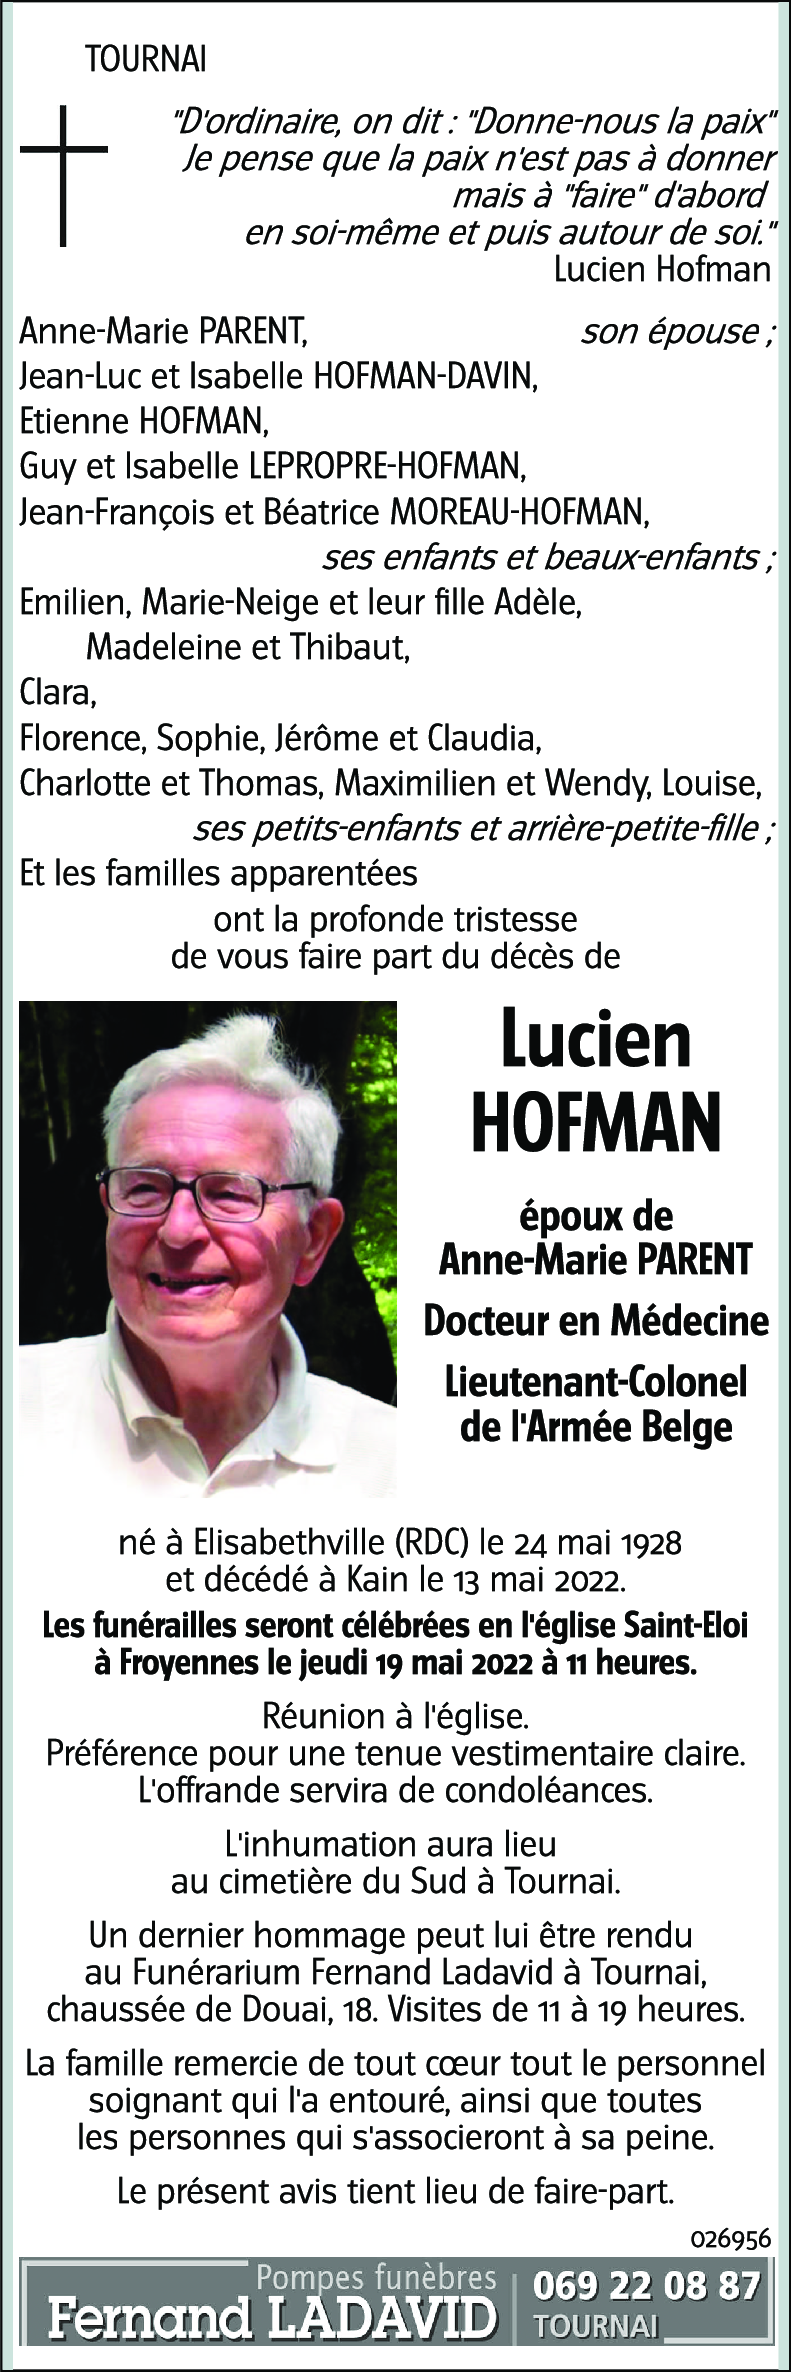 Lucien HOFMAN